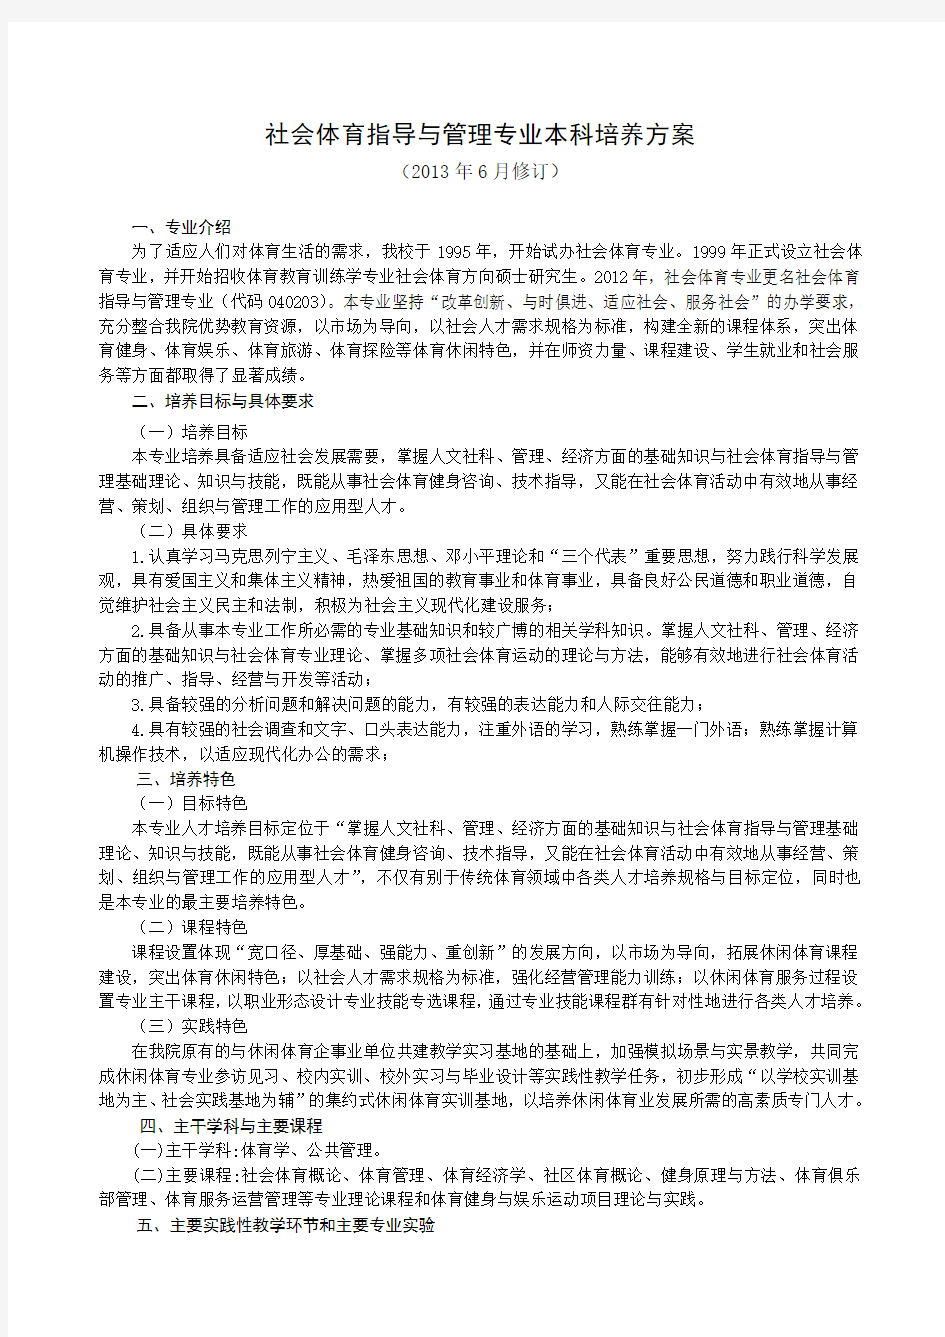 武汉体育学院(2013年修订)社会体育指导与管理专业本科培养方案